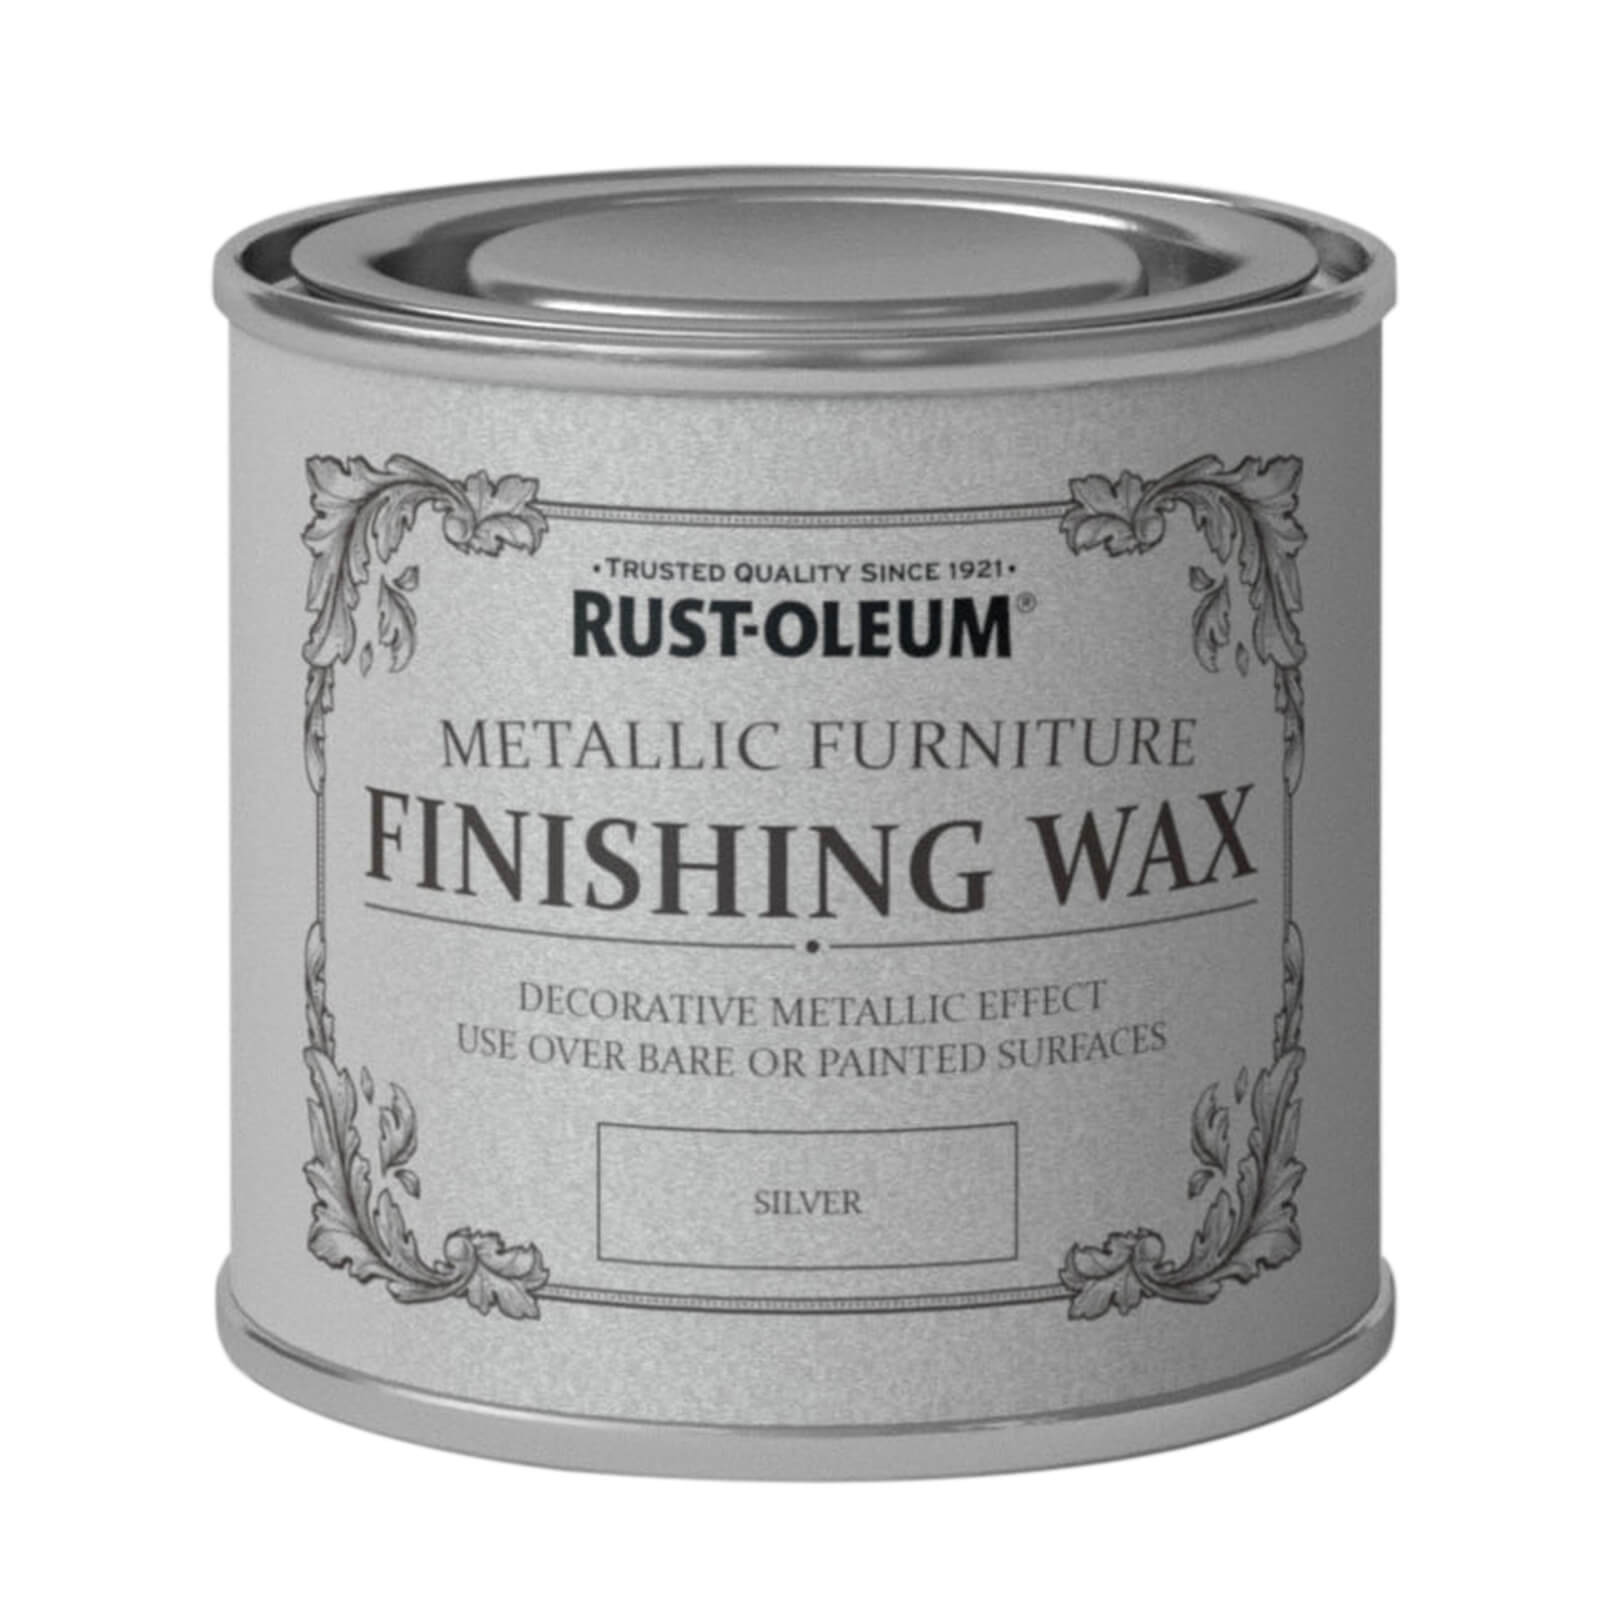 Rust-Oleum Metallic Furniture Finishing Wax Silver - 125ml